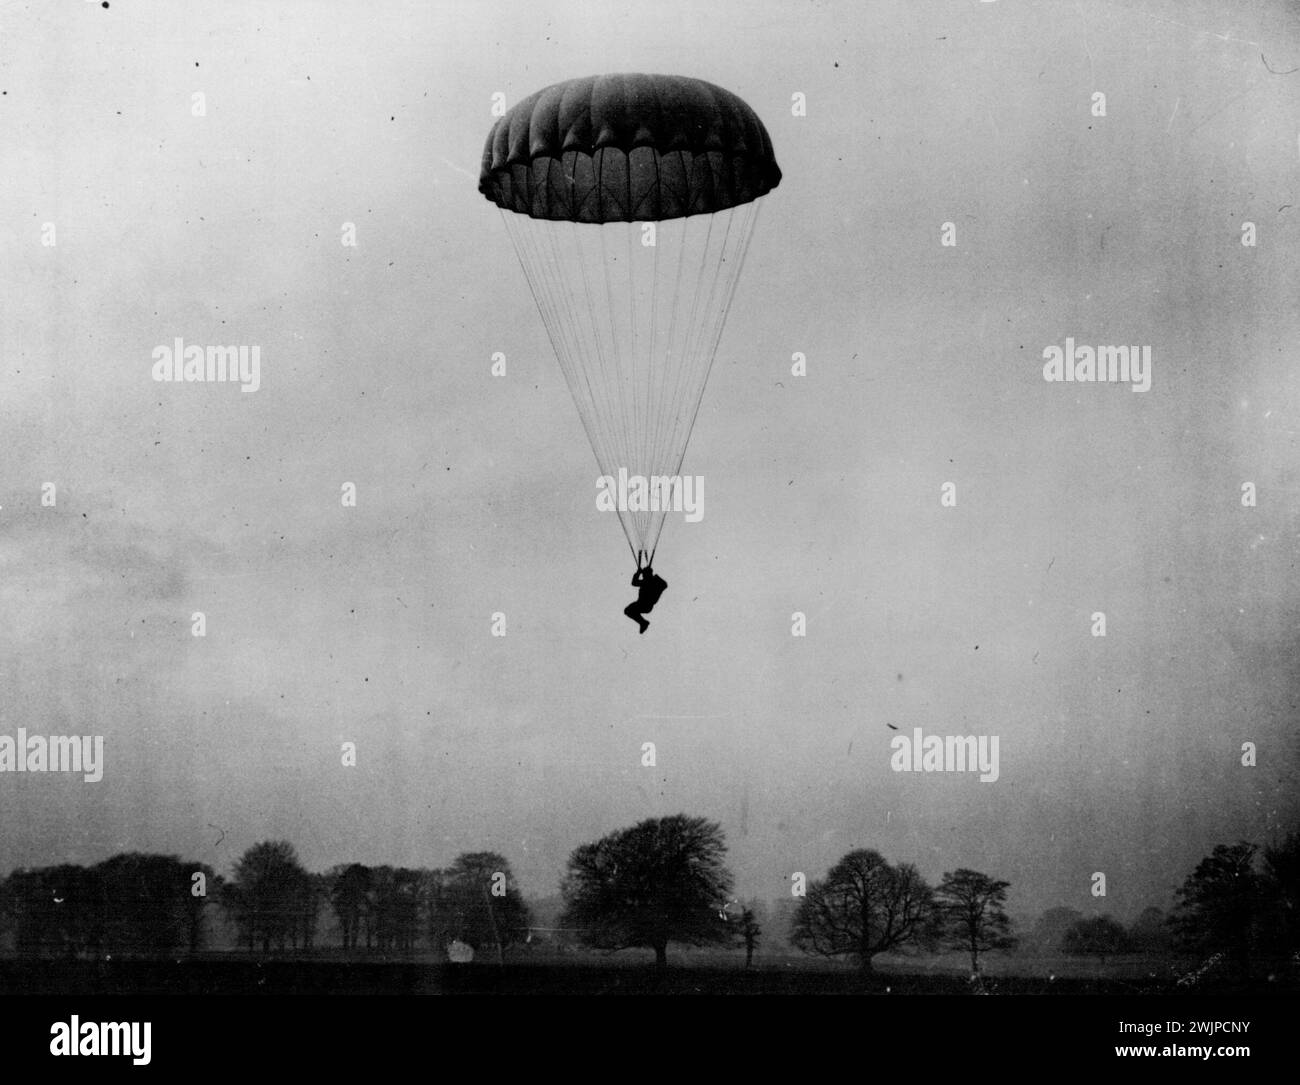 Diese Bilder von Fallschirmtruppen unter Anleitung wurden in einer geheimen R.A.F.-Station in Großbritannien erworben, wo Armee und Luftwaffe bei der Ausbildung zusammenarbeiten. Eine der Fallschirmtruppen landet kurz vor der Landung. Der Mann kontrolliert seine Landerichtung und hat seine Knie hochgehoben, bereit für den Schock der Landung. Juli 1955 Stockfoto